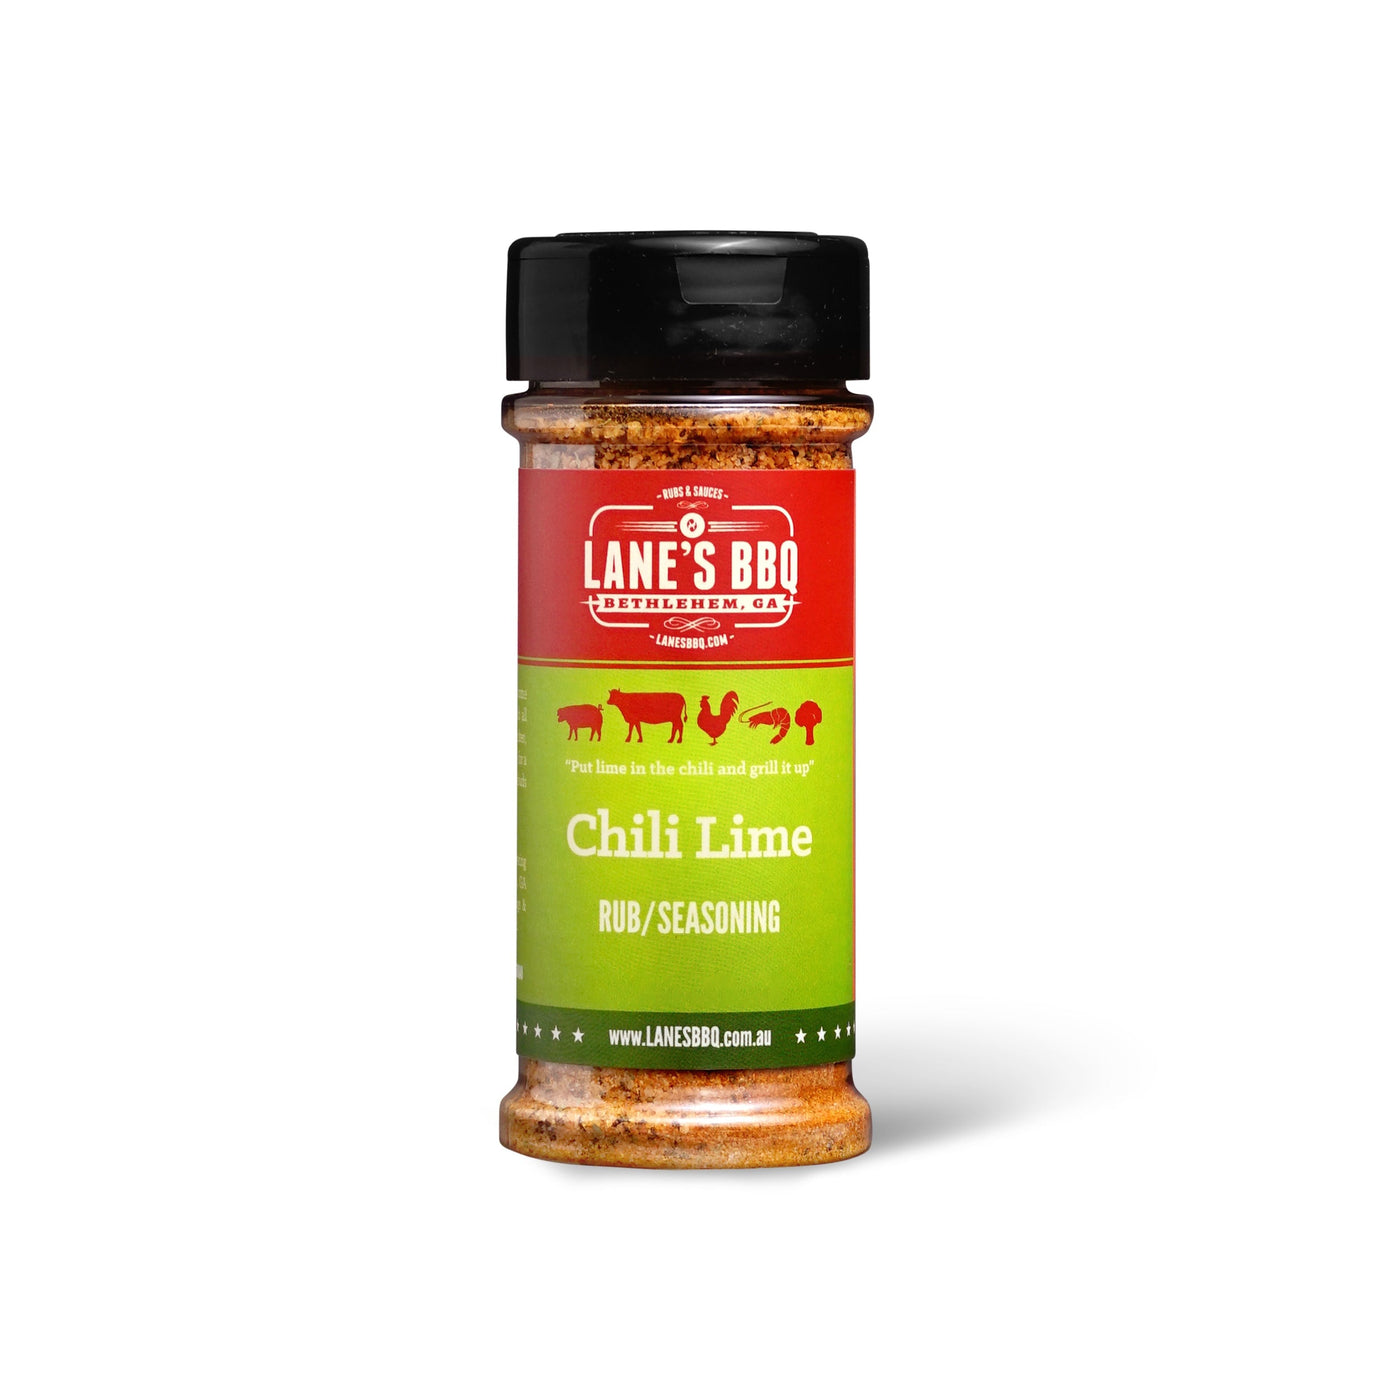 Lane's BBQ Chili Lime Rub 127g